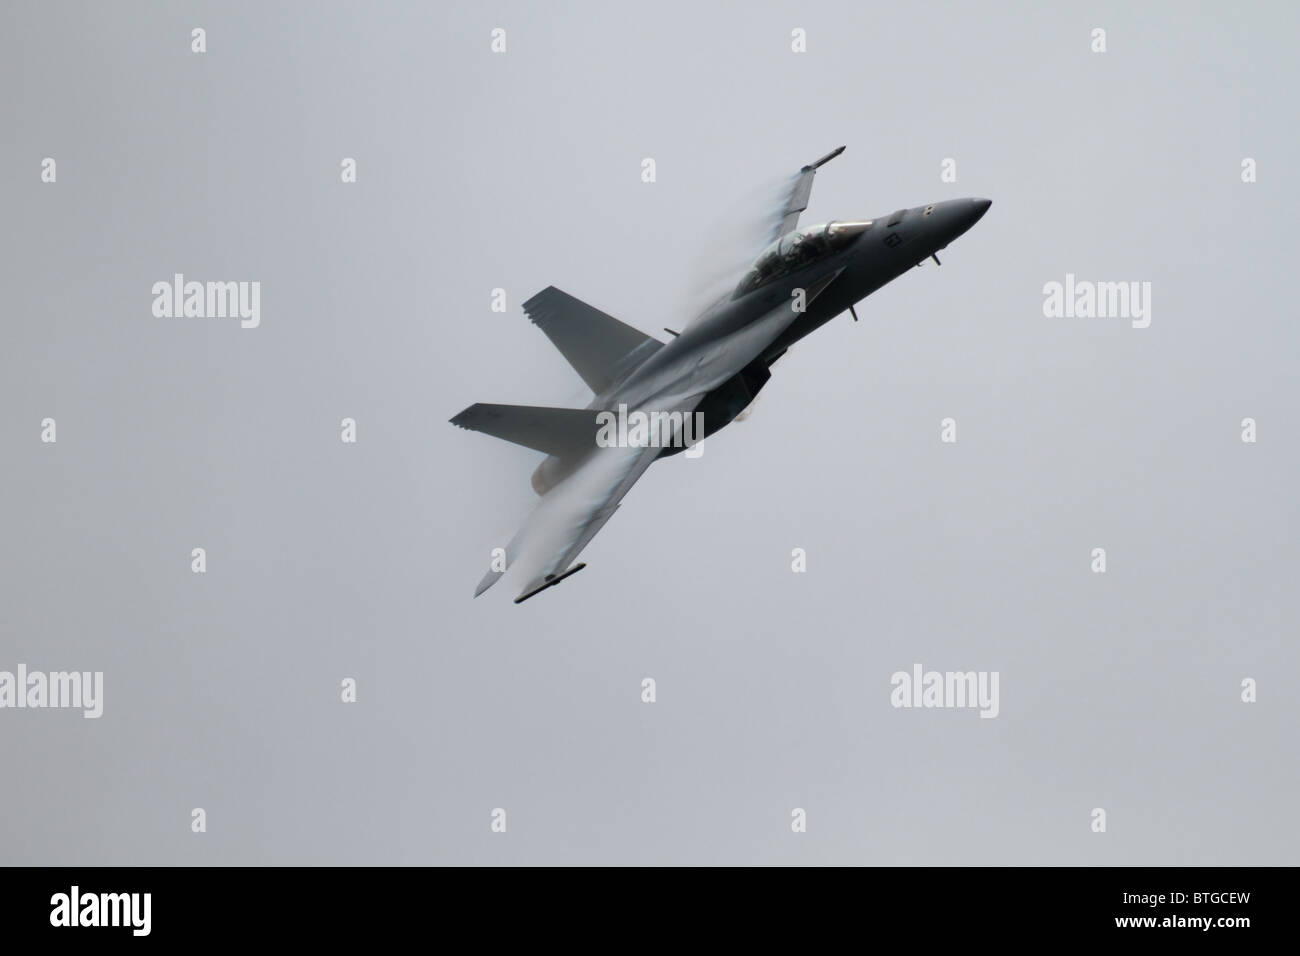 F18 Hornet voler sur un jour nuageux au-dessus du lac Washington à Seattle pour l'Seafair air show. Pression de vapeur visible sur ailes Banque D'Images